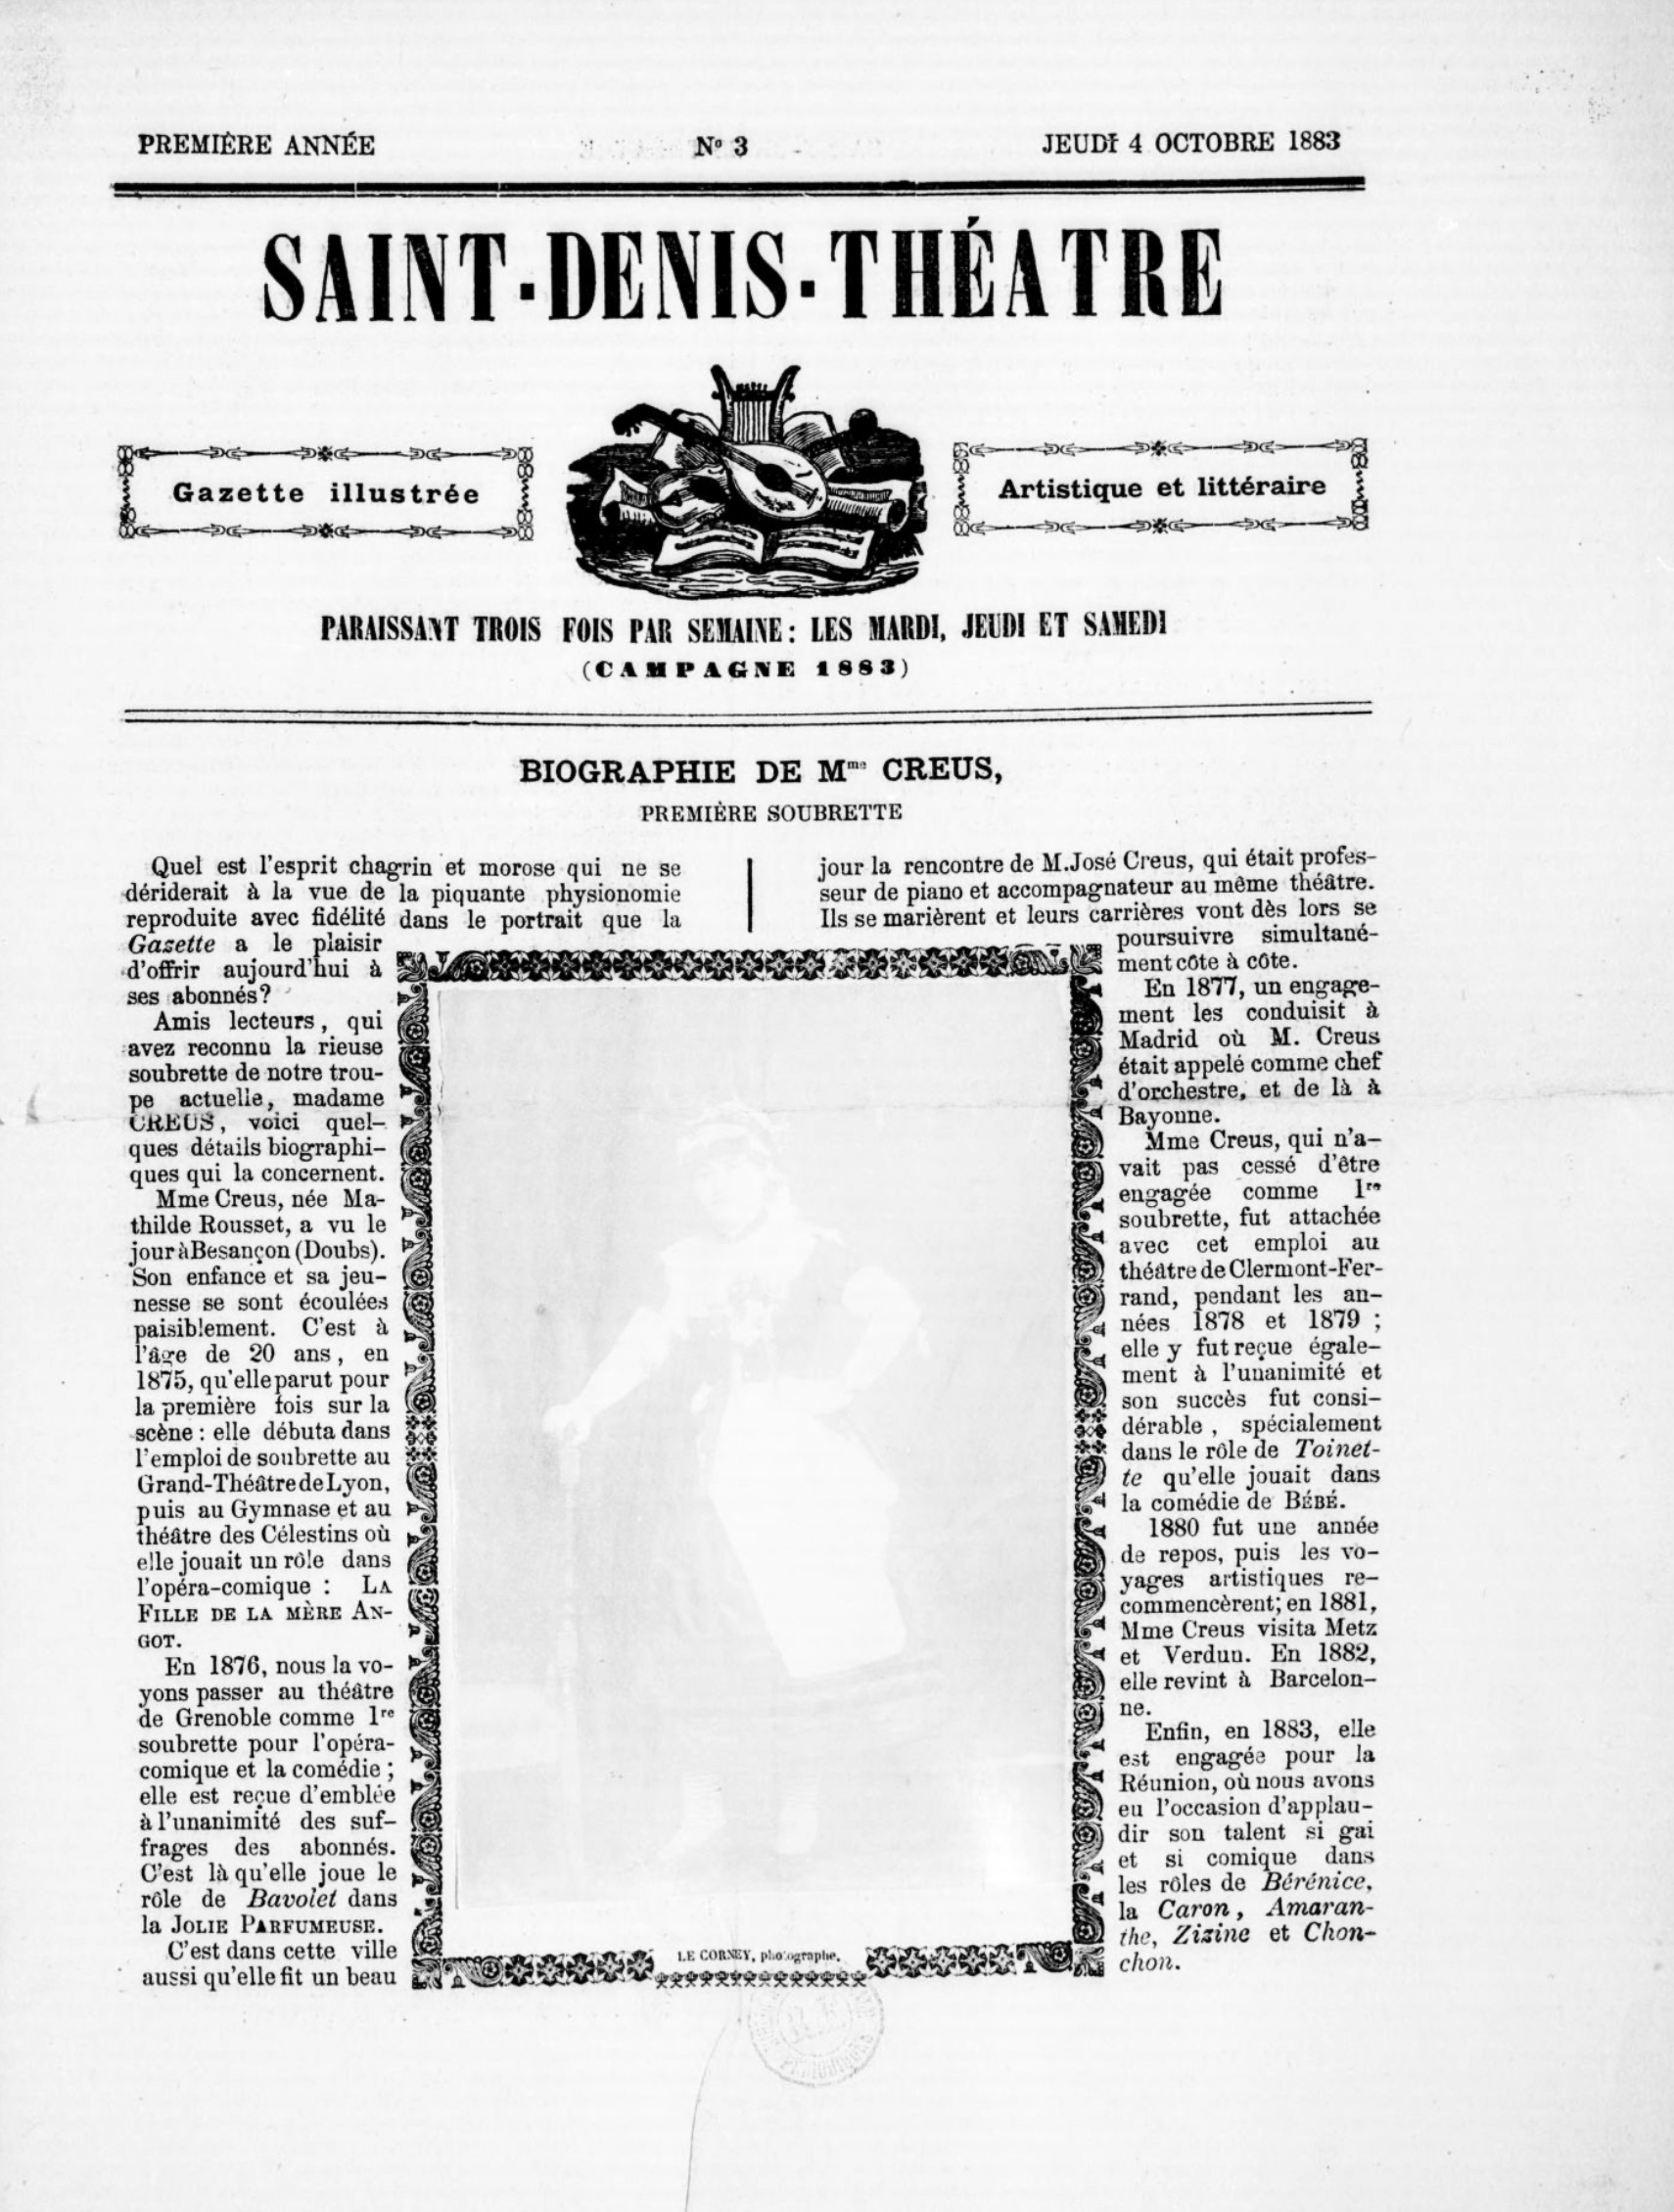 Saint-Denis théâtre (1883)